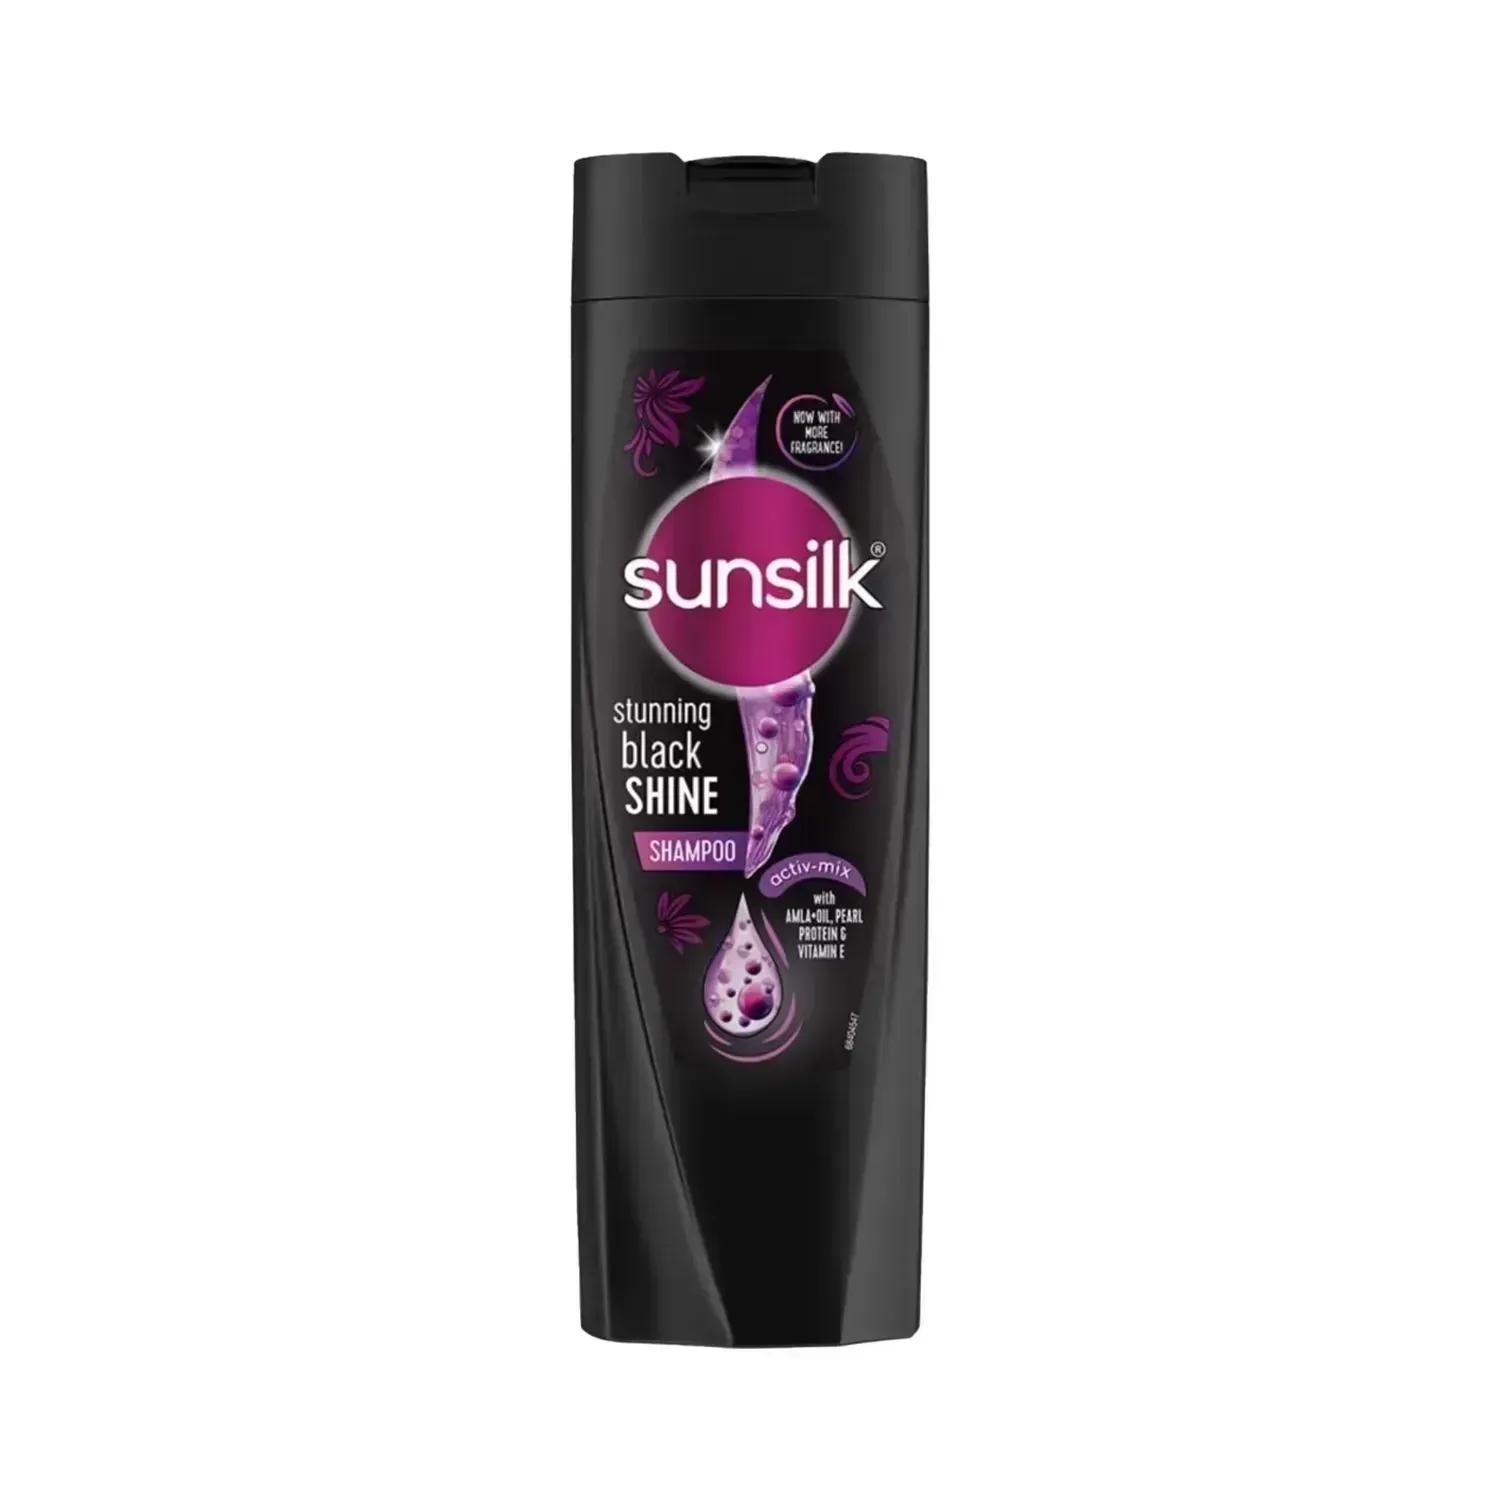 Sunsilk Stunning Black Shine Shampoo - (180ml)